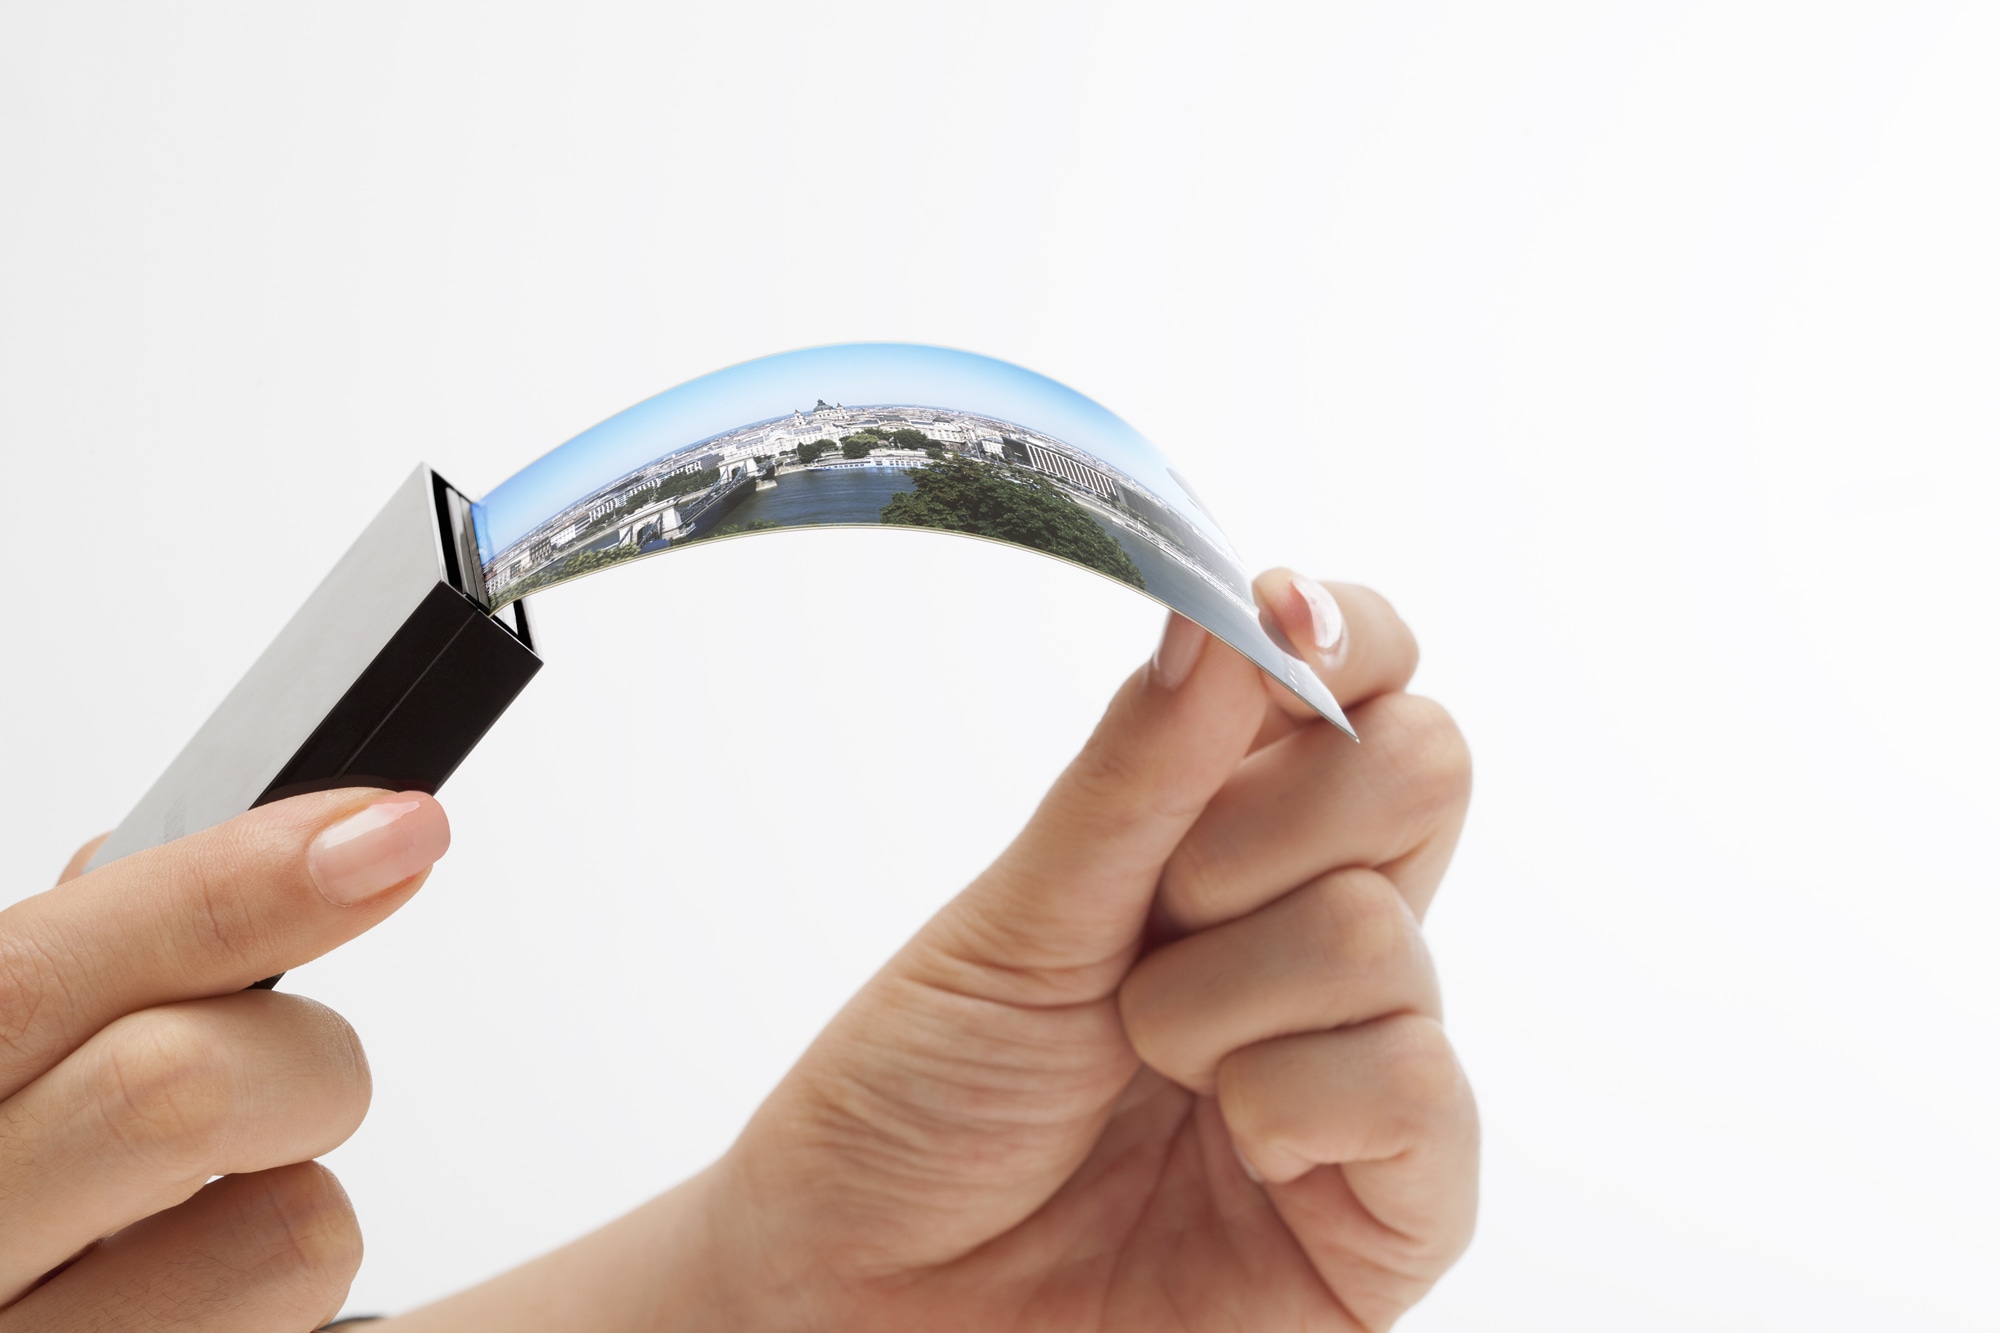 Tela OLED flexível curva da Samsung